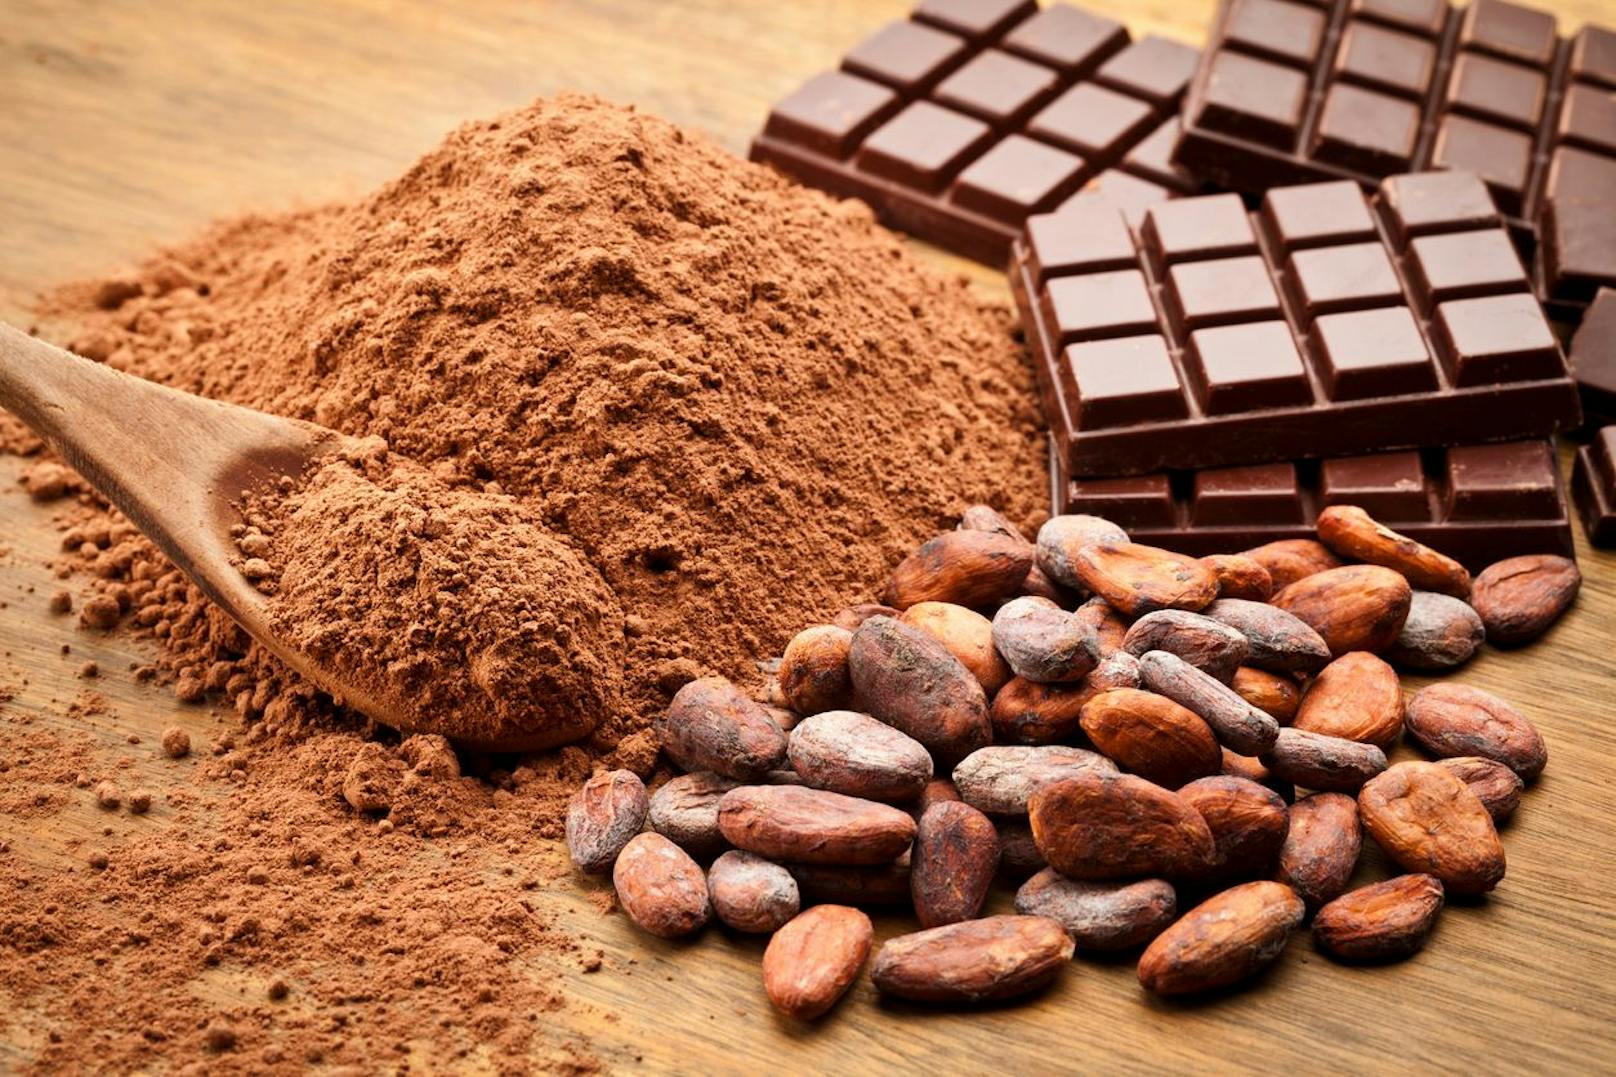 Gewöhnlicher Kakao aus dem Supermarkt wurde hocherhitzt und so stark verarbeitet, dass du von keinen der positiven Effekte profitieren kannst. Nur der Pulver, der direkt von der Kakaobohne stammt kann deine Stimmung positiv beeinflussen.